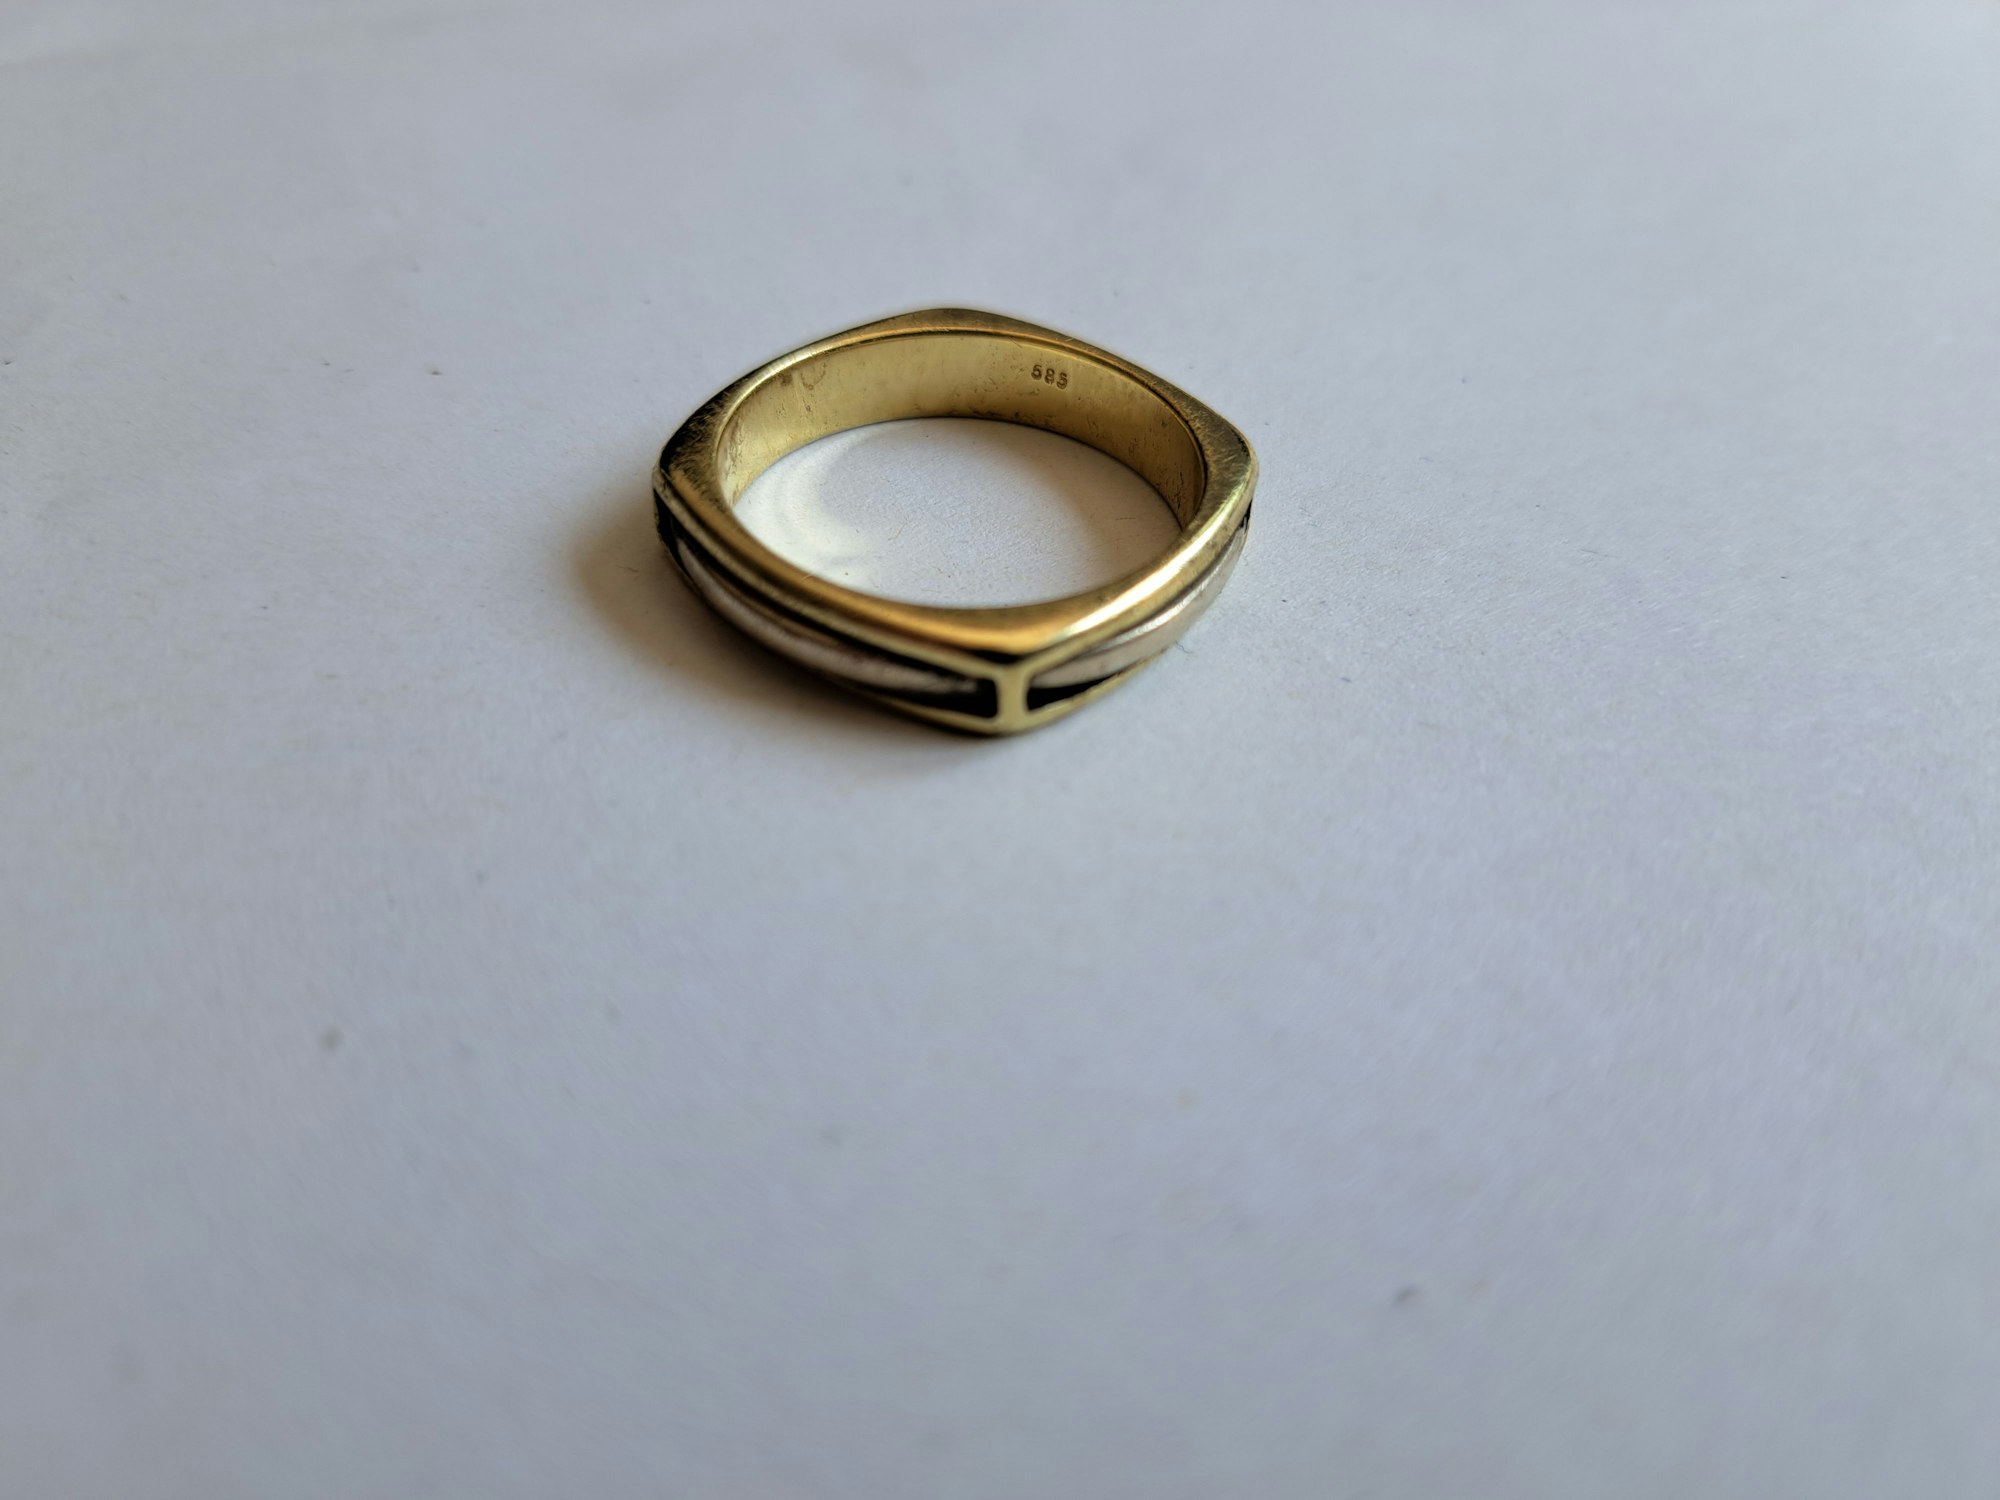 Ein golgender Ring auf einem weißen Tisch.